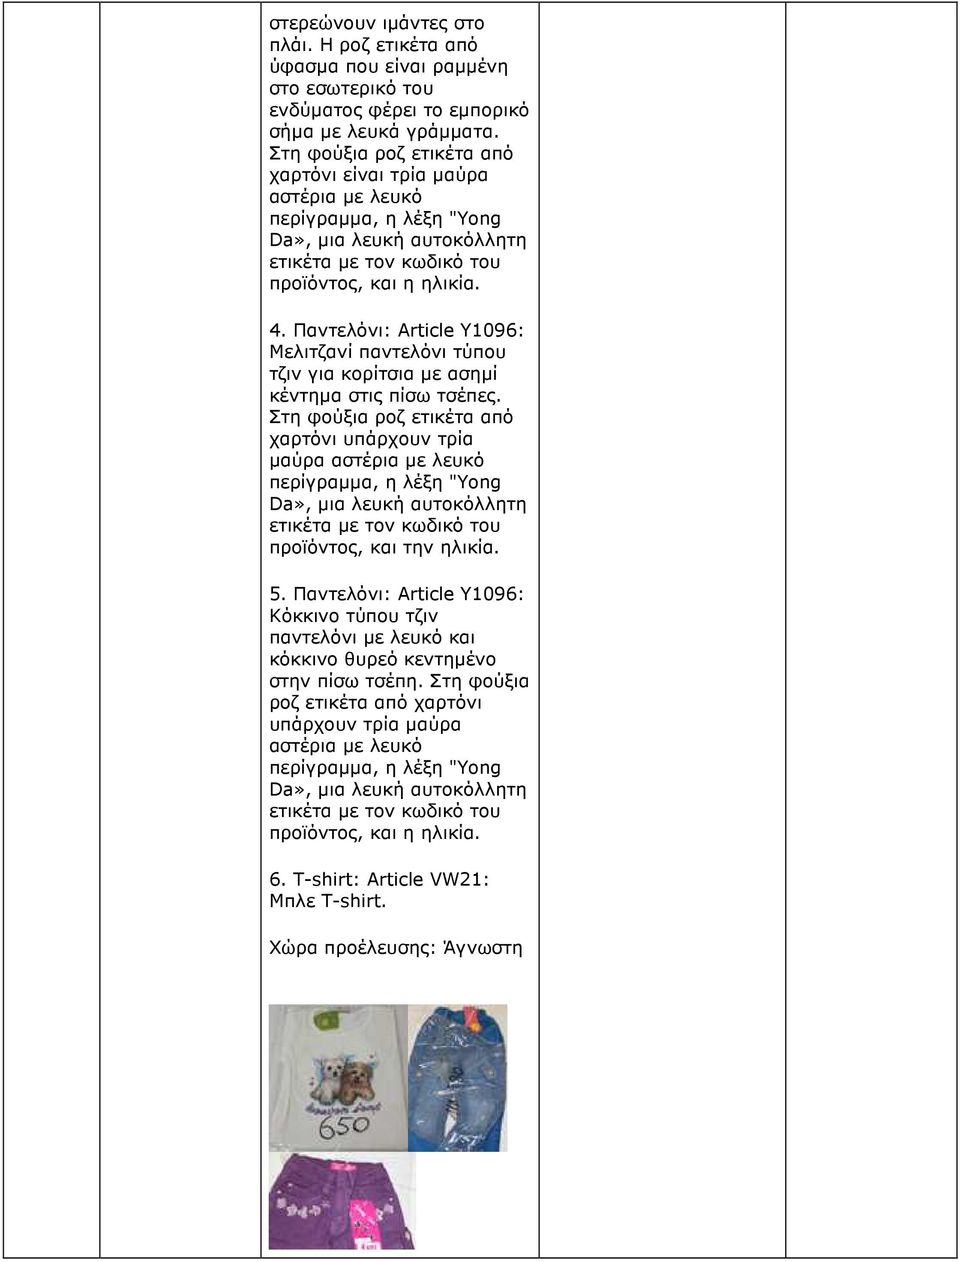 Παντελόνι: Article Y1096: Μελιτζανί παντελόνι τύπου τζιν για κορίτσια µε ασηµί κέντηµα στις πίσω τσέπες.